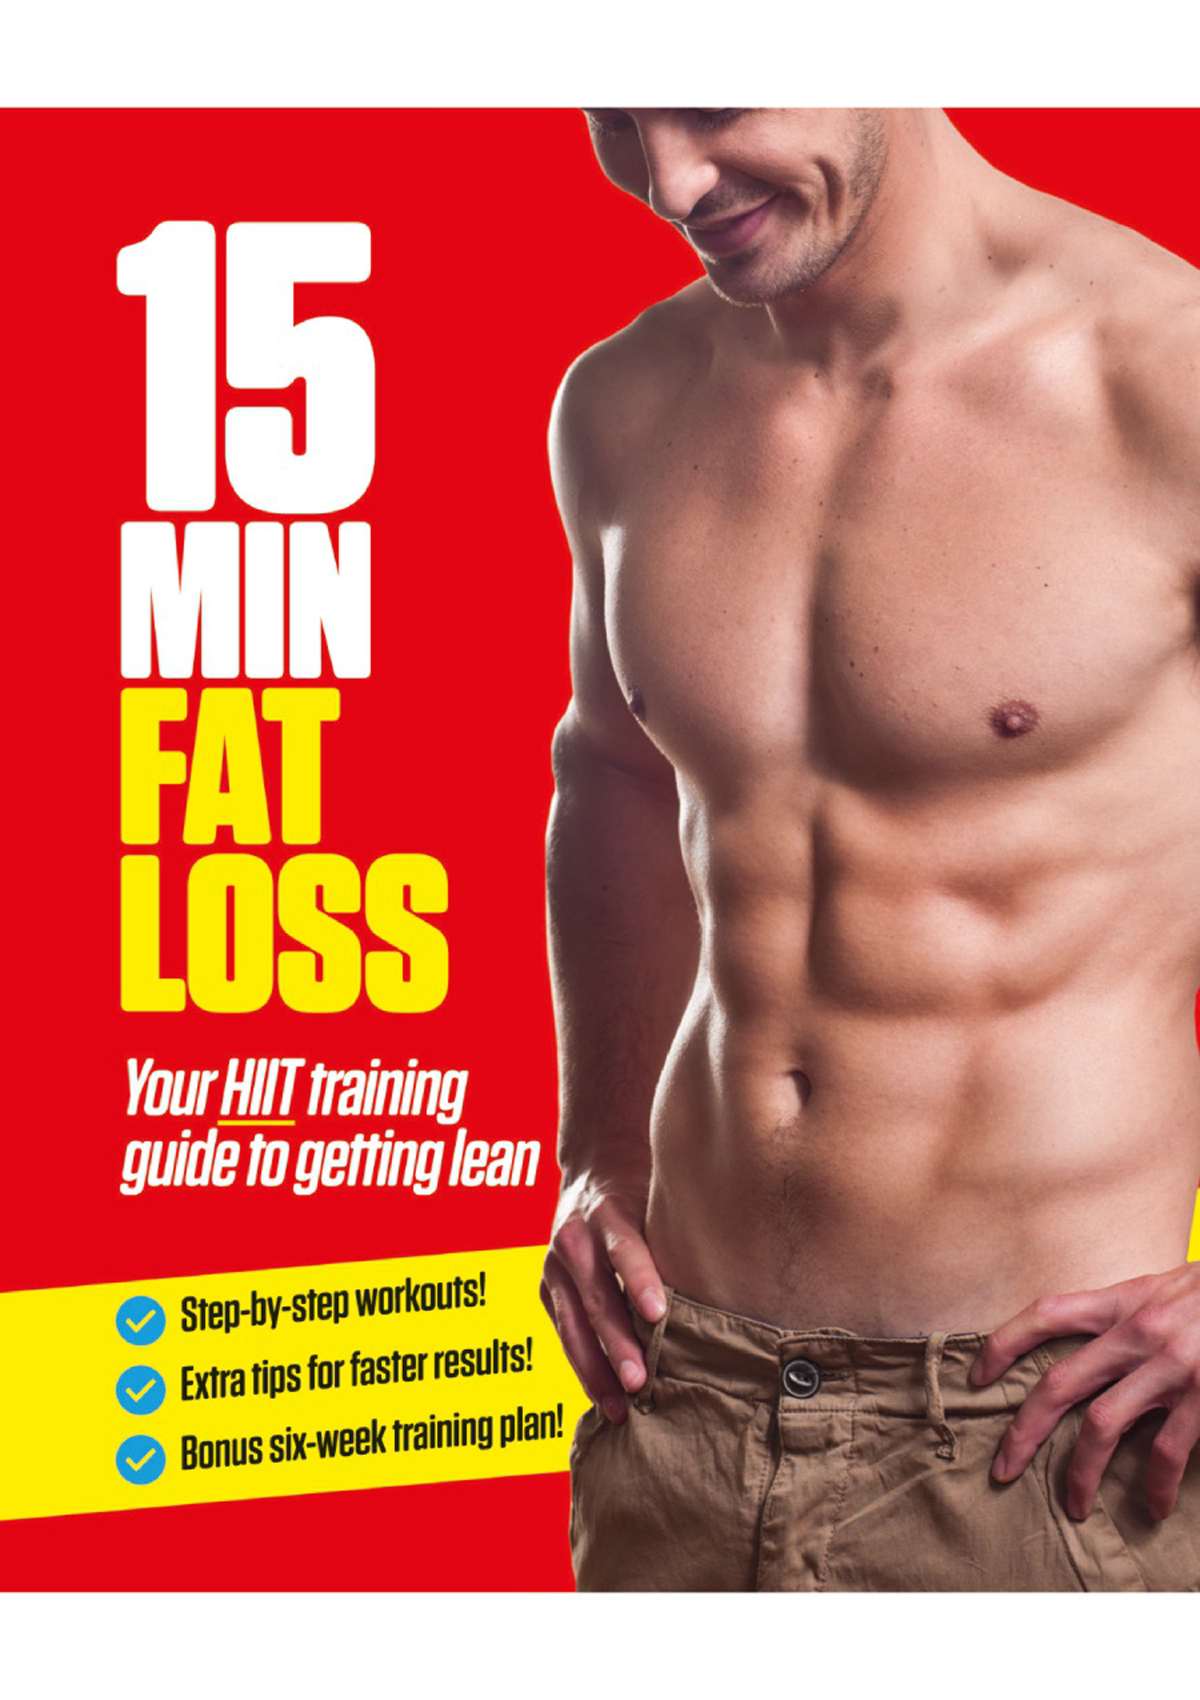 15 Minute Fat Loss